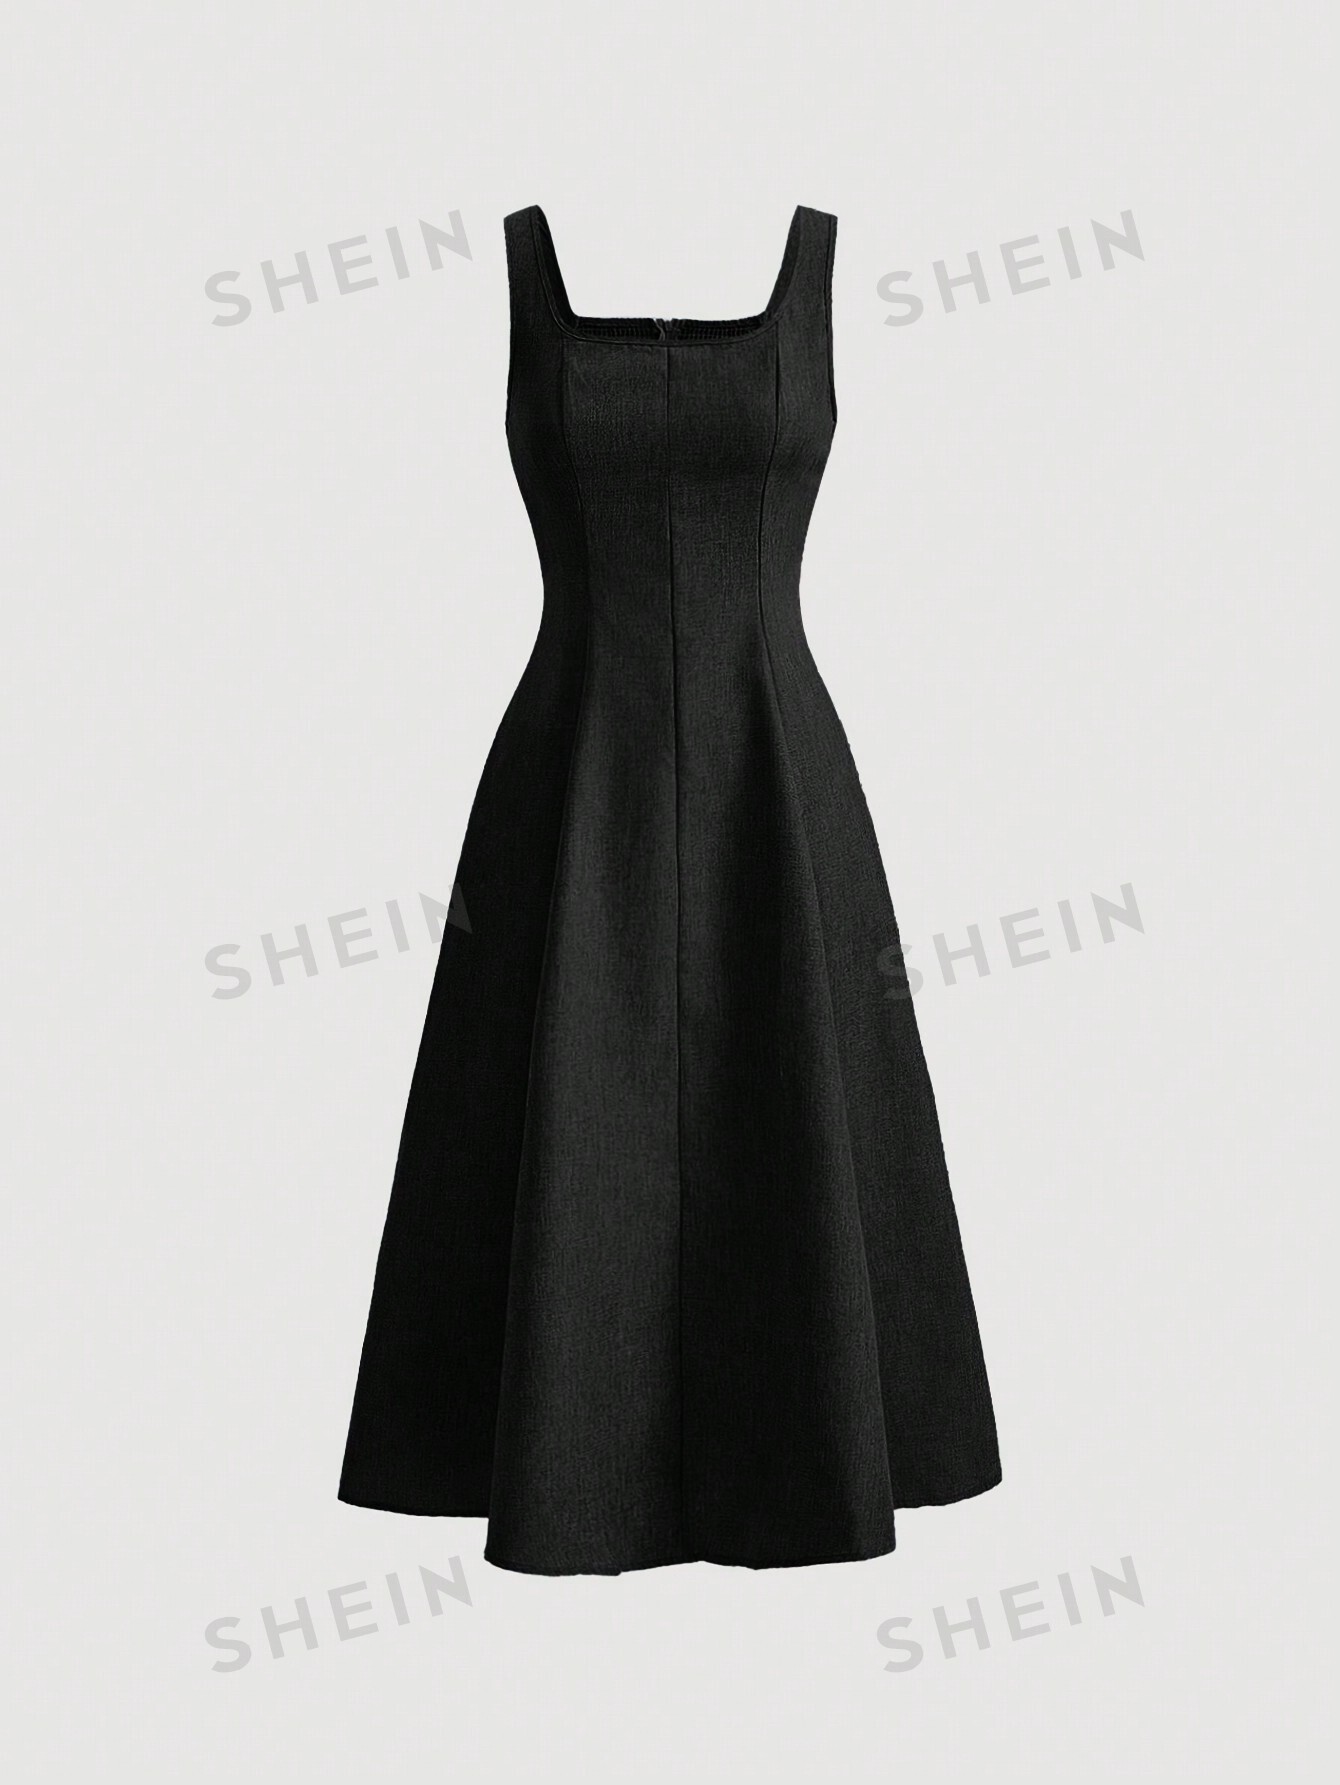 SHEIN MOD однотонное платье с гофрированной спиной и расклешенным подолом, черный женское кружевное шифоновое платье в горошек с квадратным вырезом